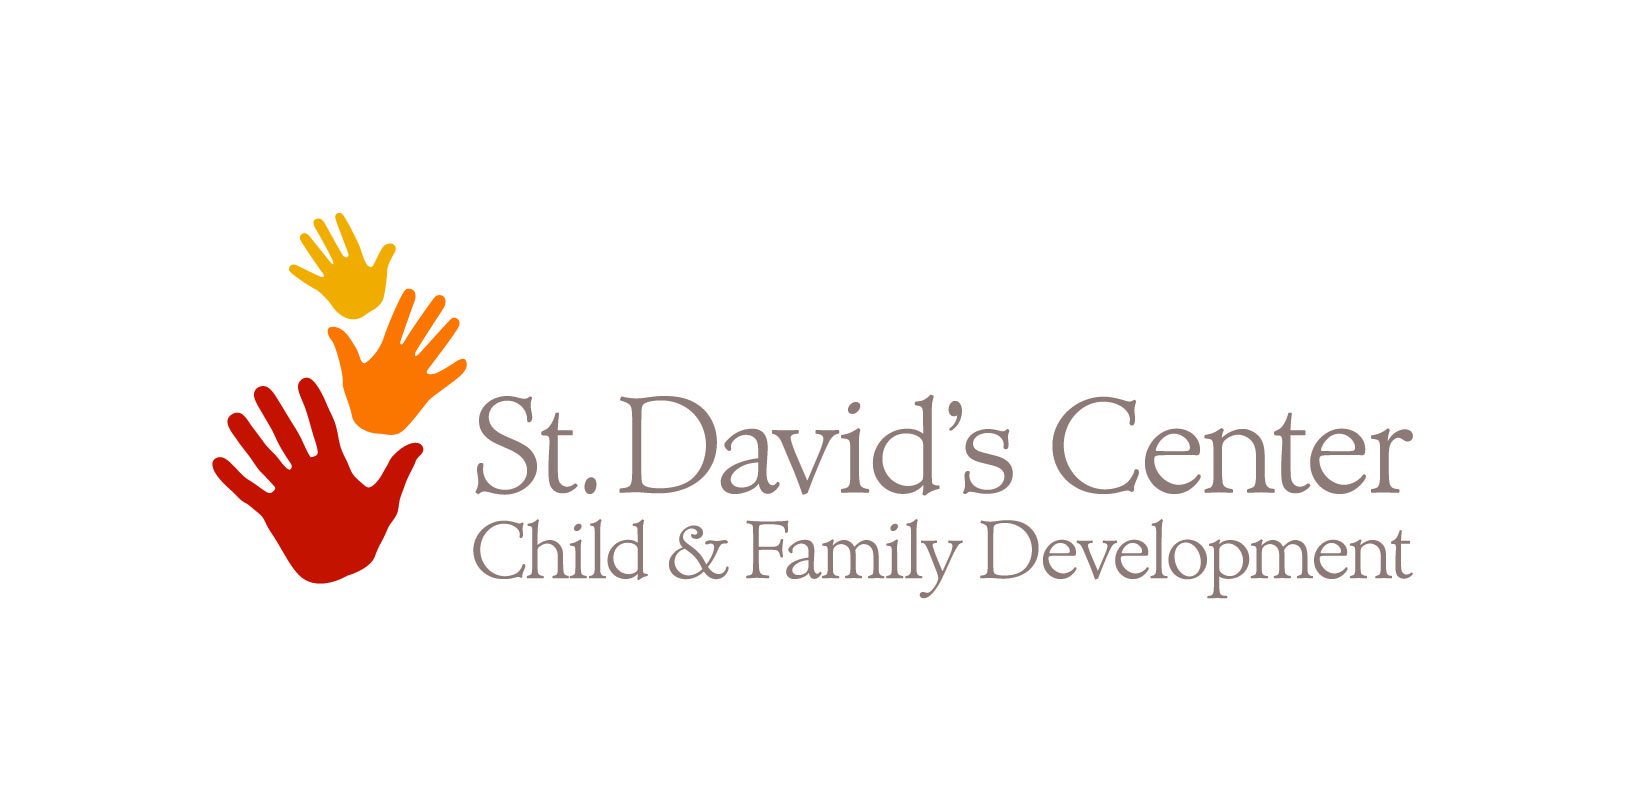 St. David’s Center for Child & Family Development